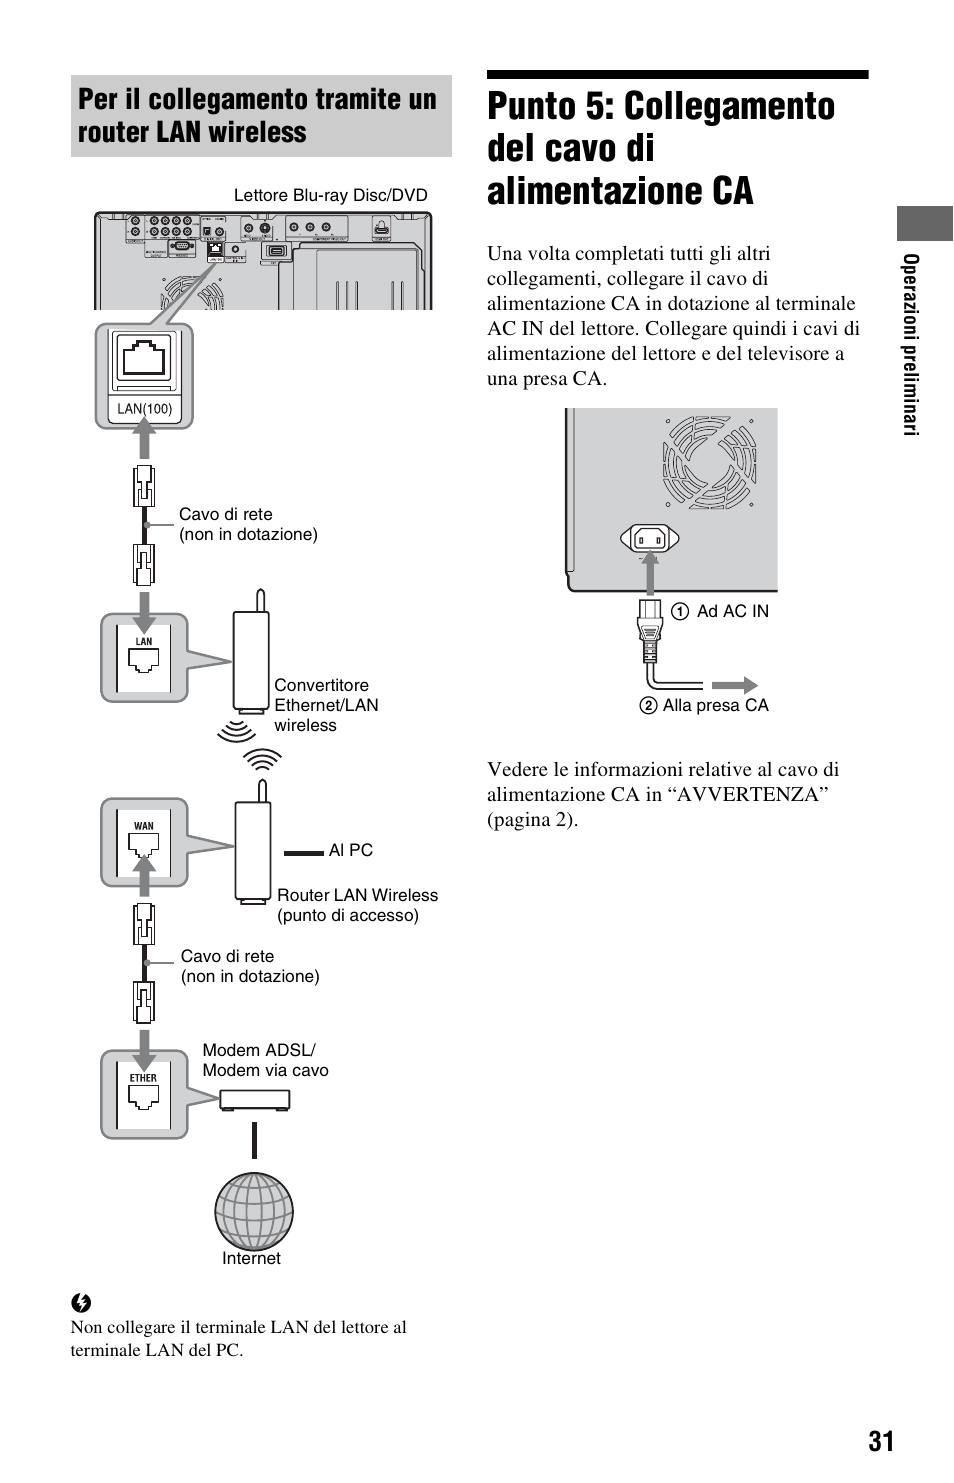 Per il collegamento tramite un router lan wireless, Punto 5: collegamento del cavo di alimentazione ca | Sony BDP-CX7000ES Manuale d'uso | Pagina 31 / 99